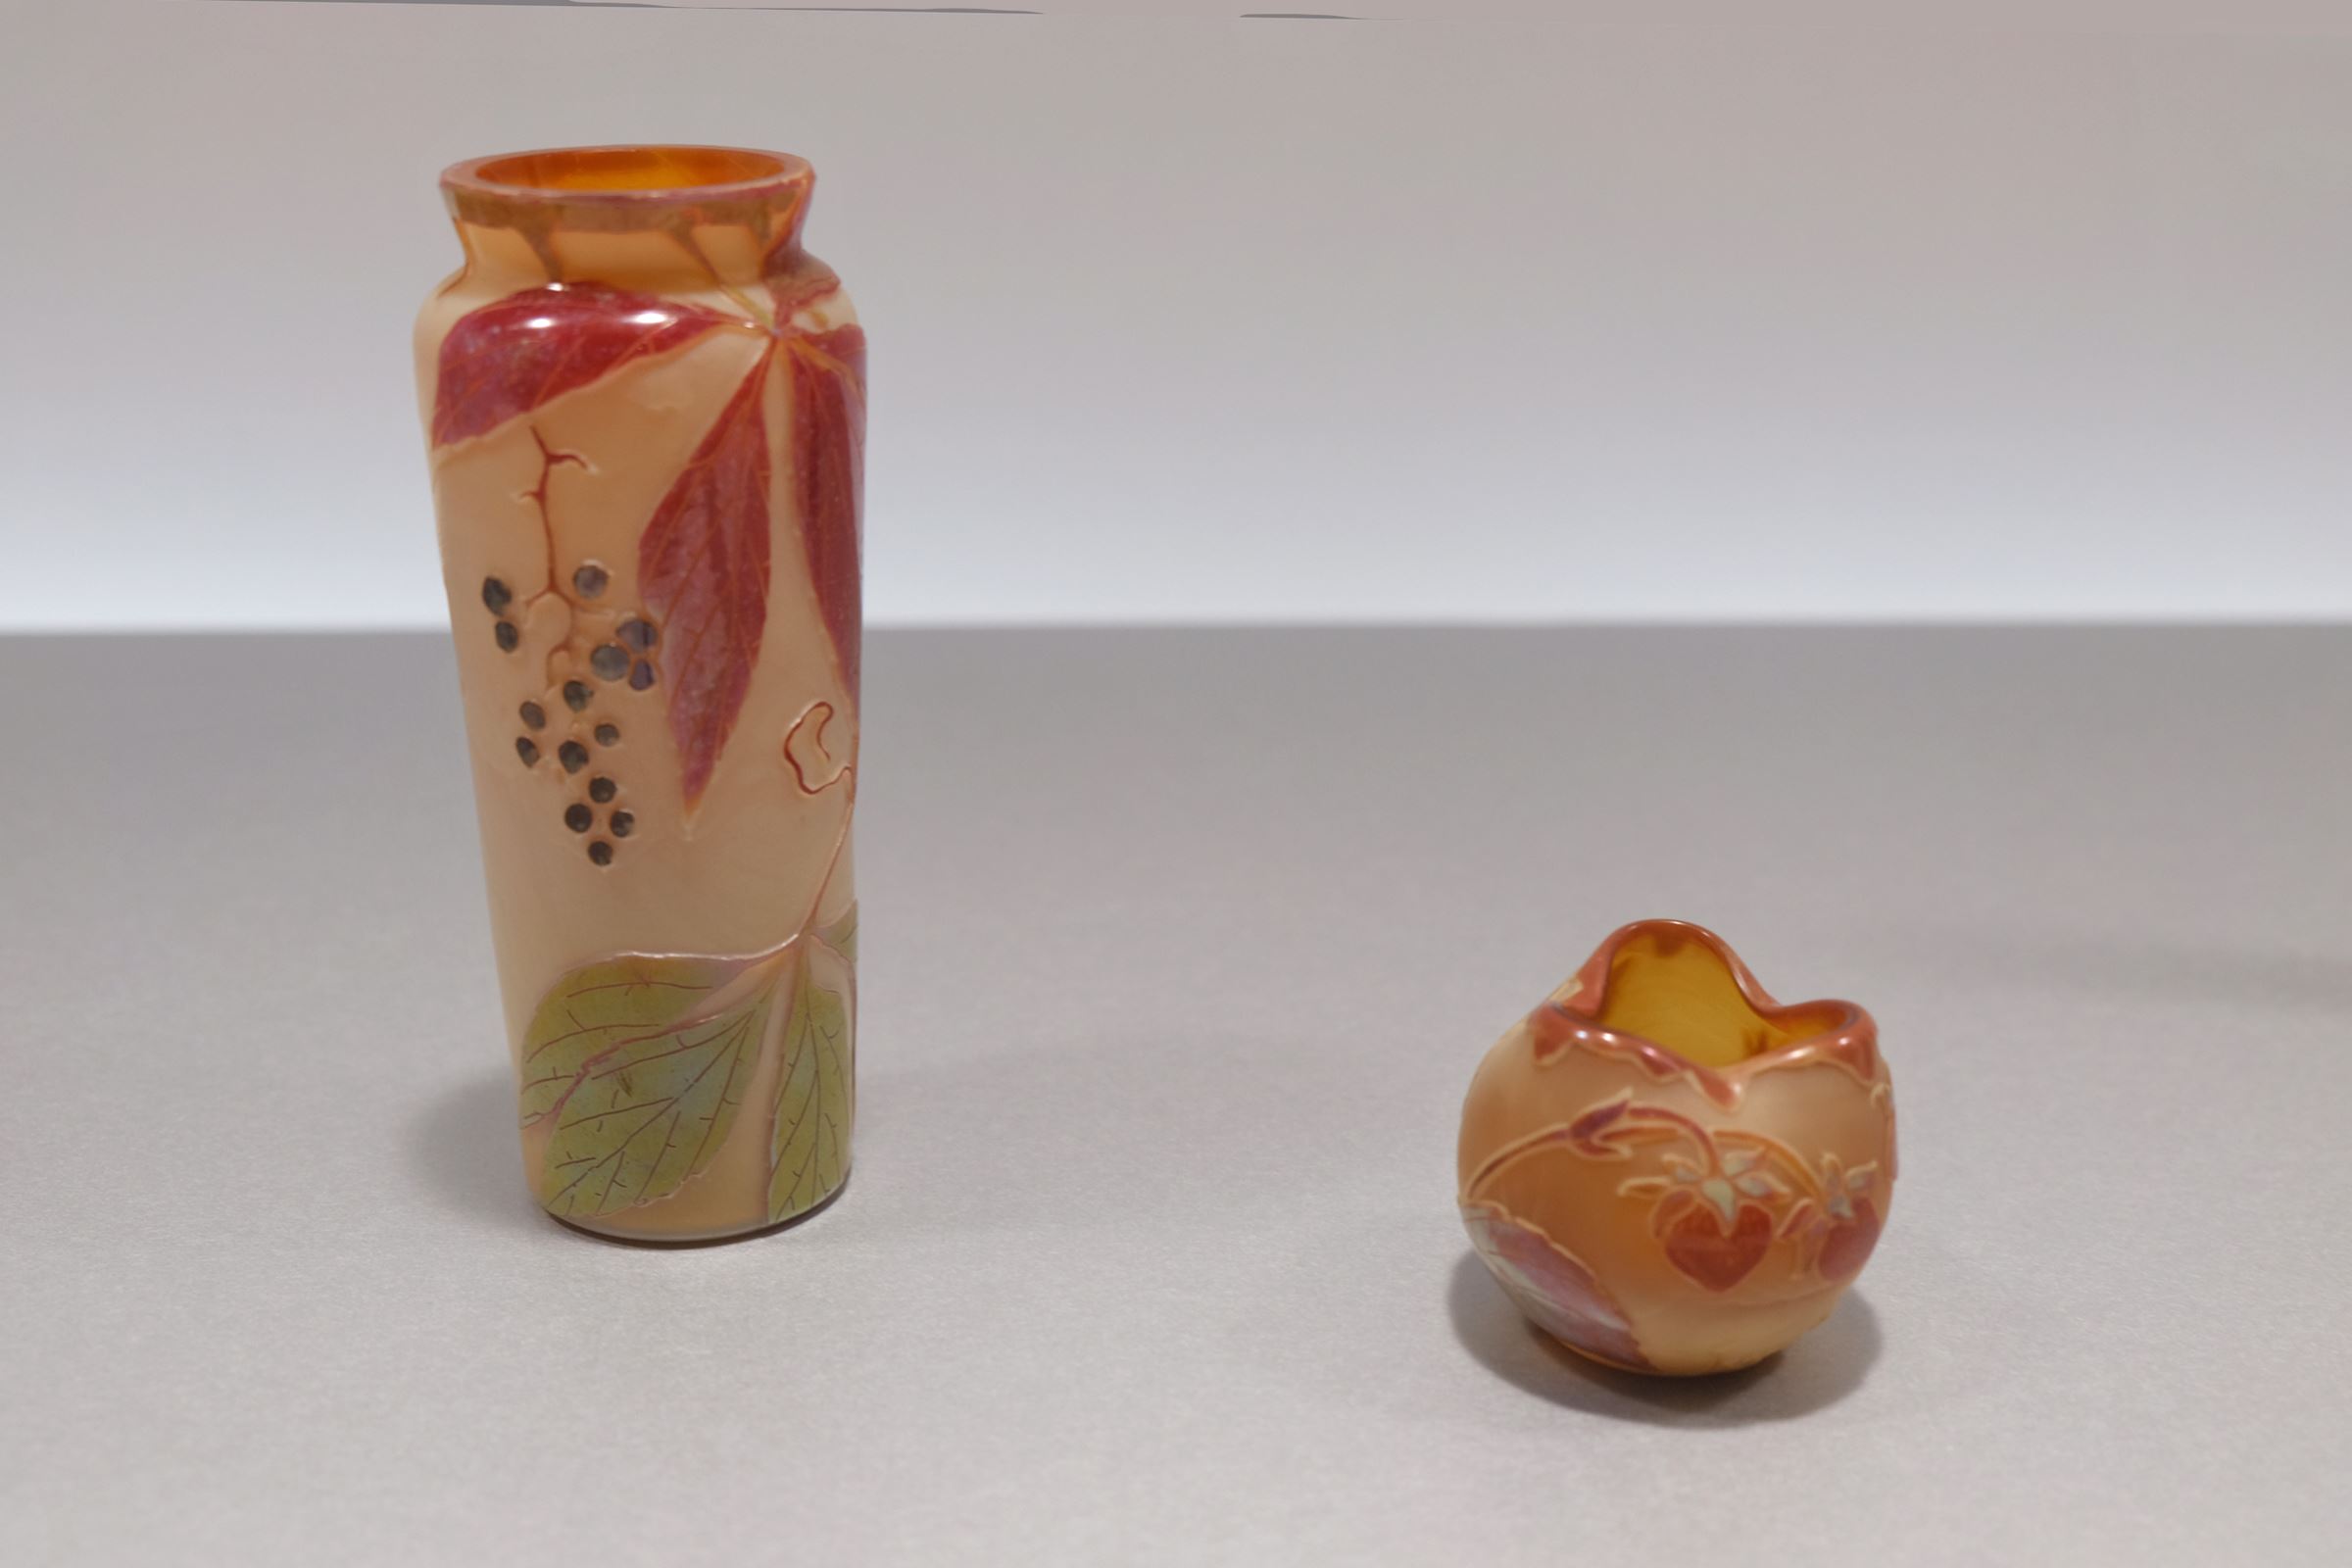 （左）ルグラ・ガラス工場 デザイン・制作：フランソワ=テオドール・ルグラ 《野蔓葡萄枝文花器》1900年頃　（右）ルグラ・ガラス工場 デザイン・制作：フランソワ=テオドール・ルグラ 《苺枝文花器》